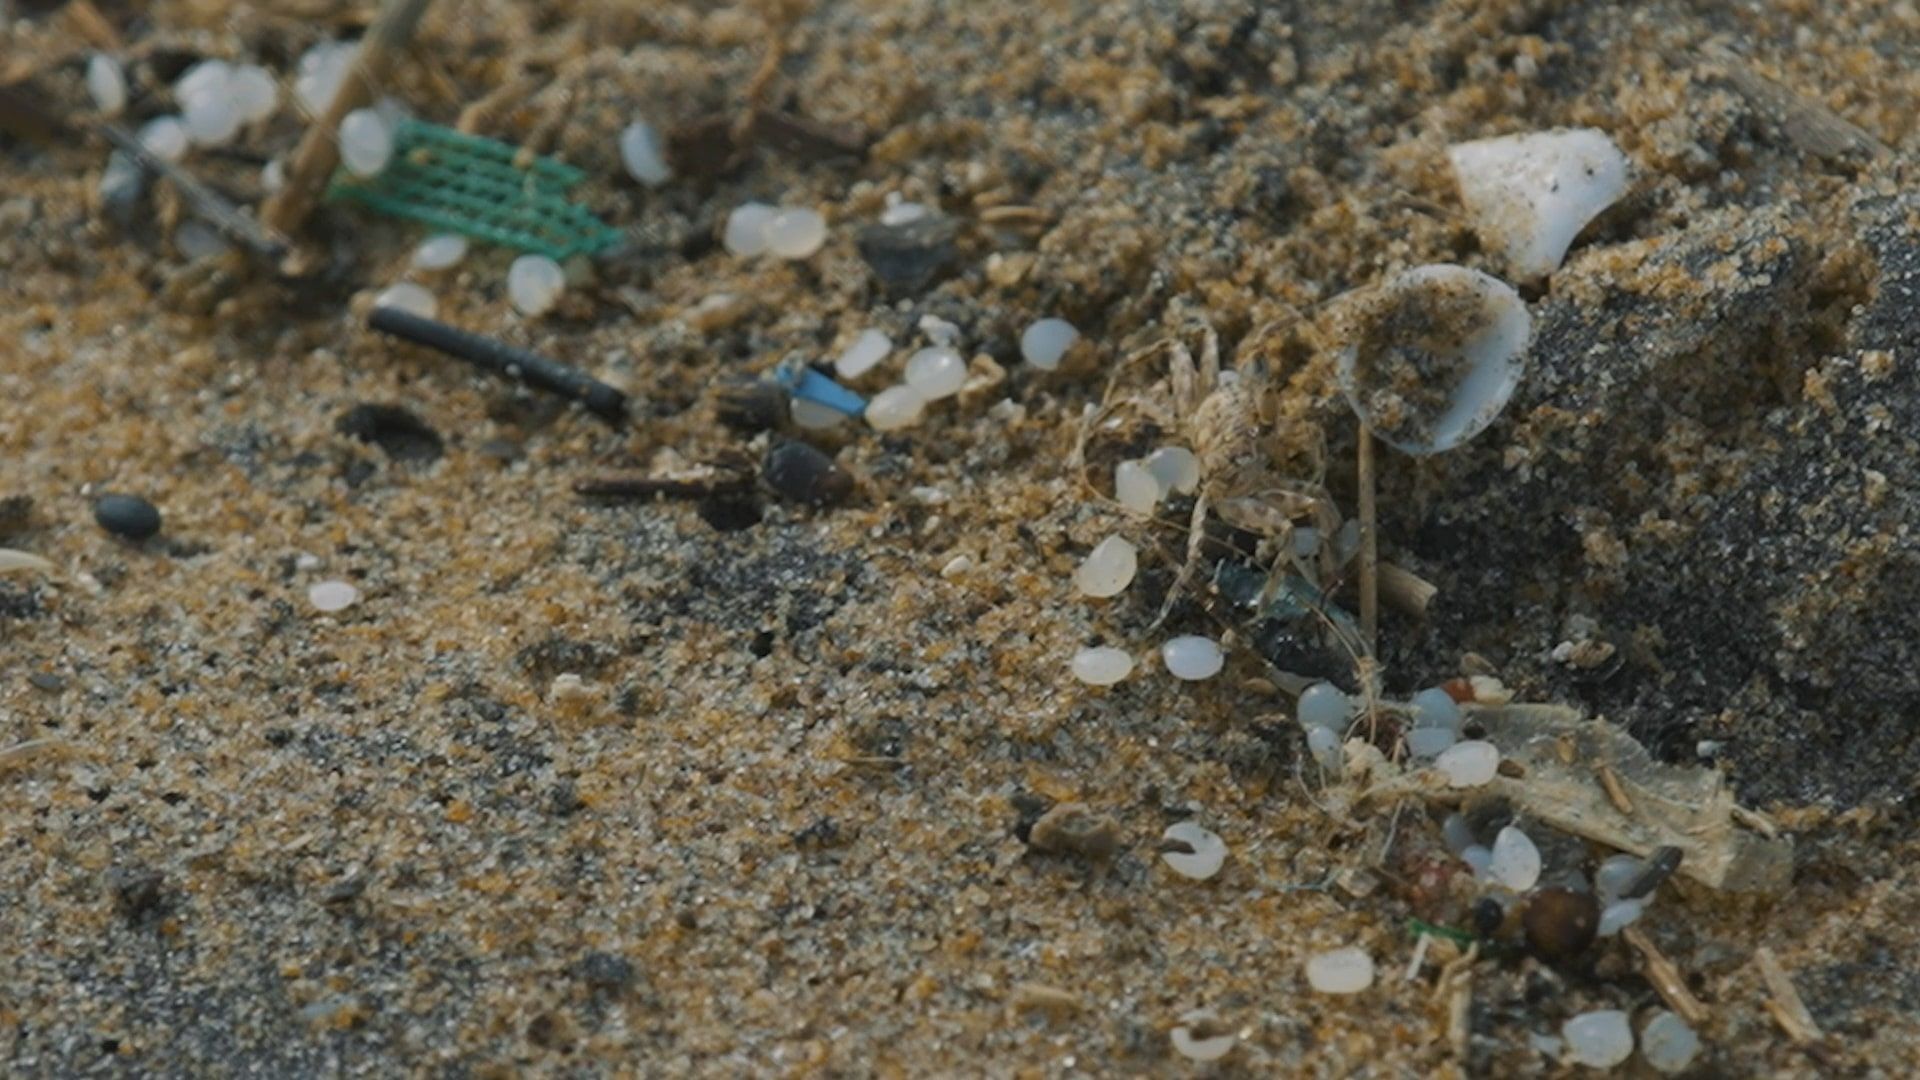 Granulés de plastique (nurdles) sur la plage : des billes de quelques millimètres difficiles à ramasser.